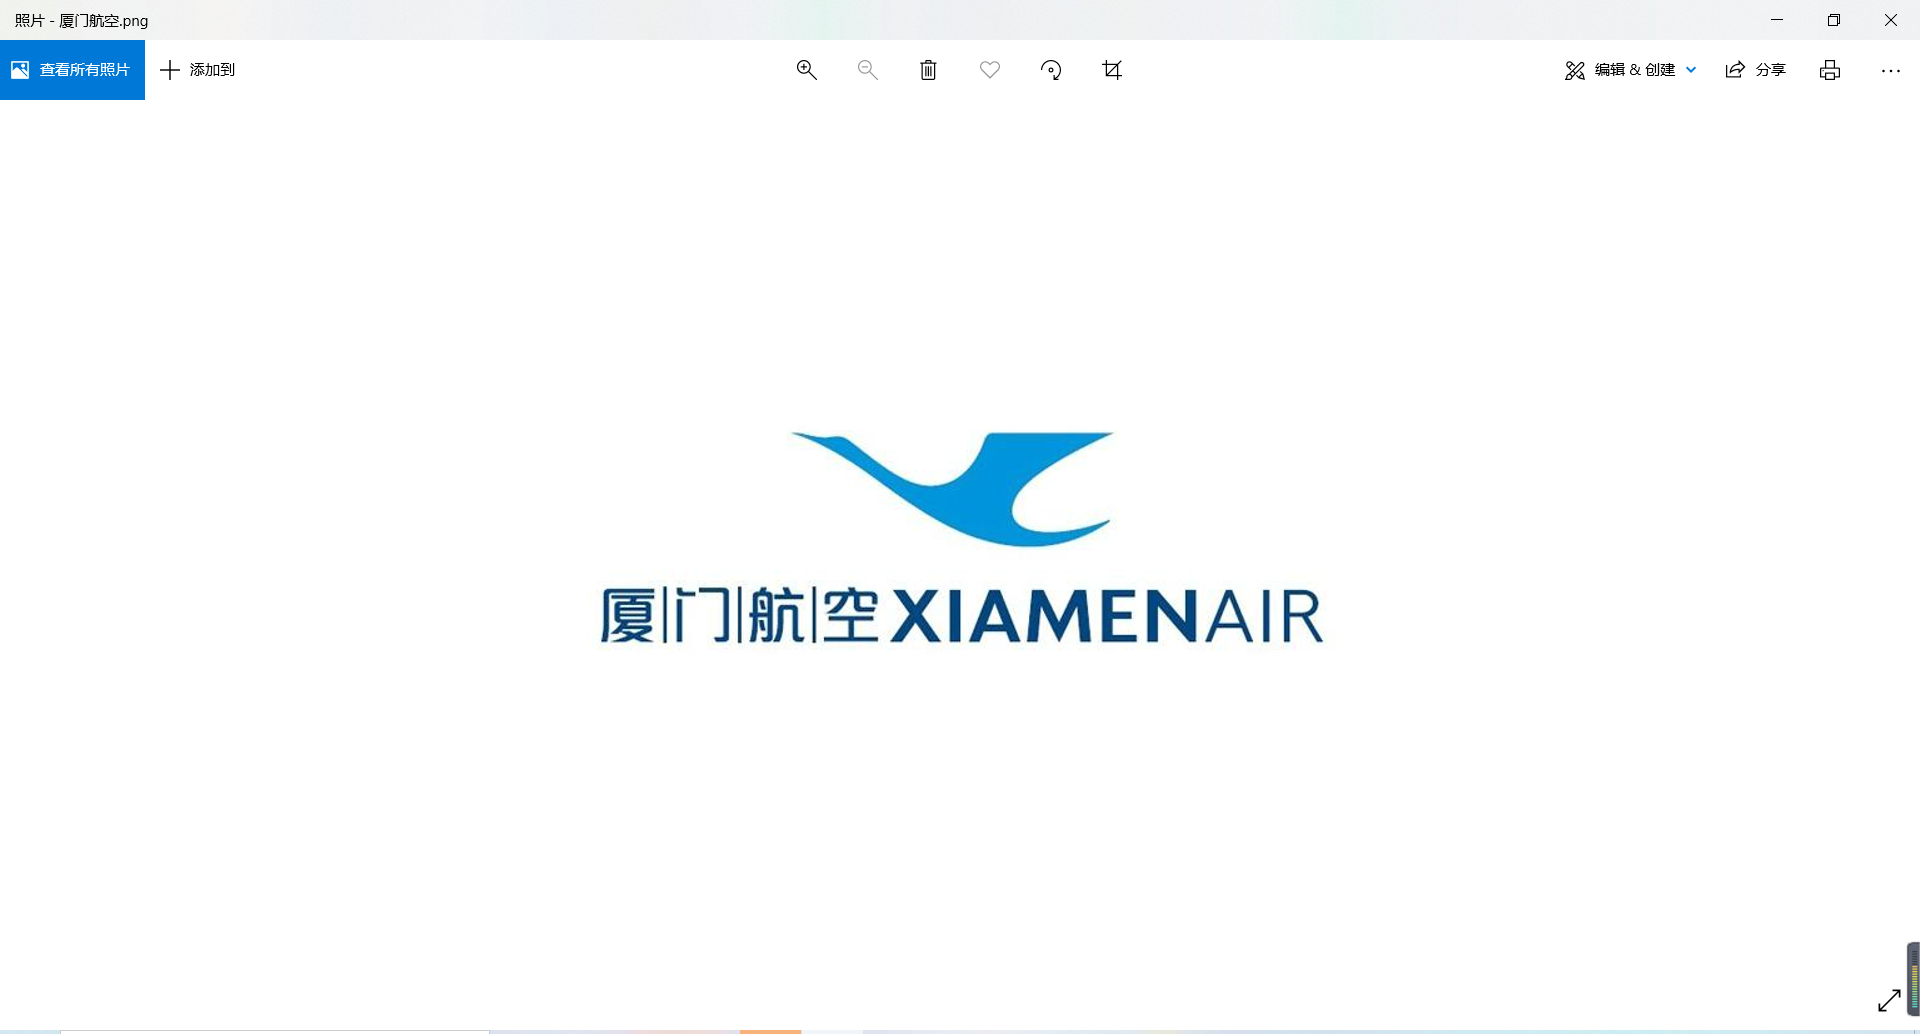 三源浦机场logo图片